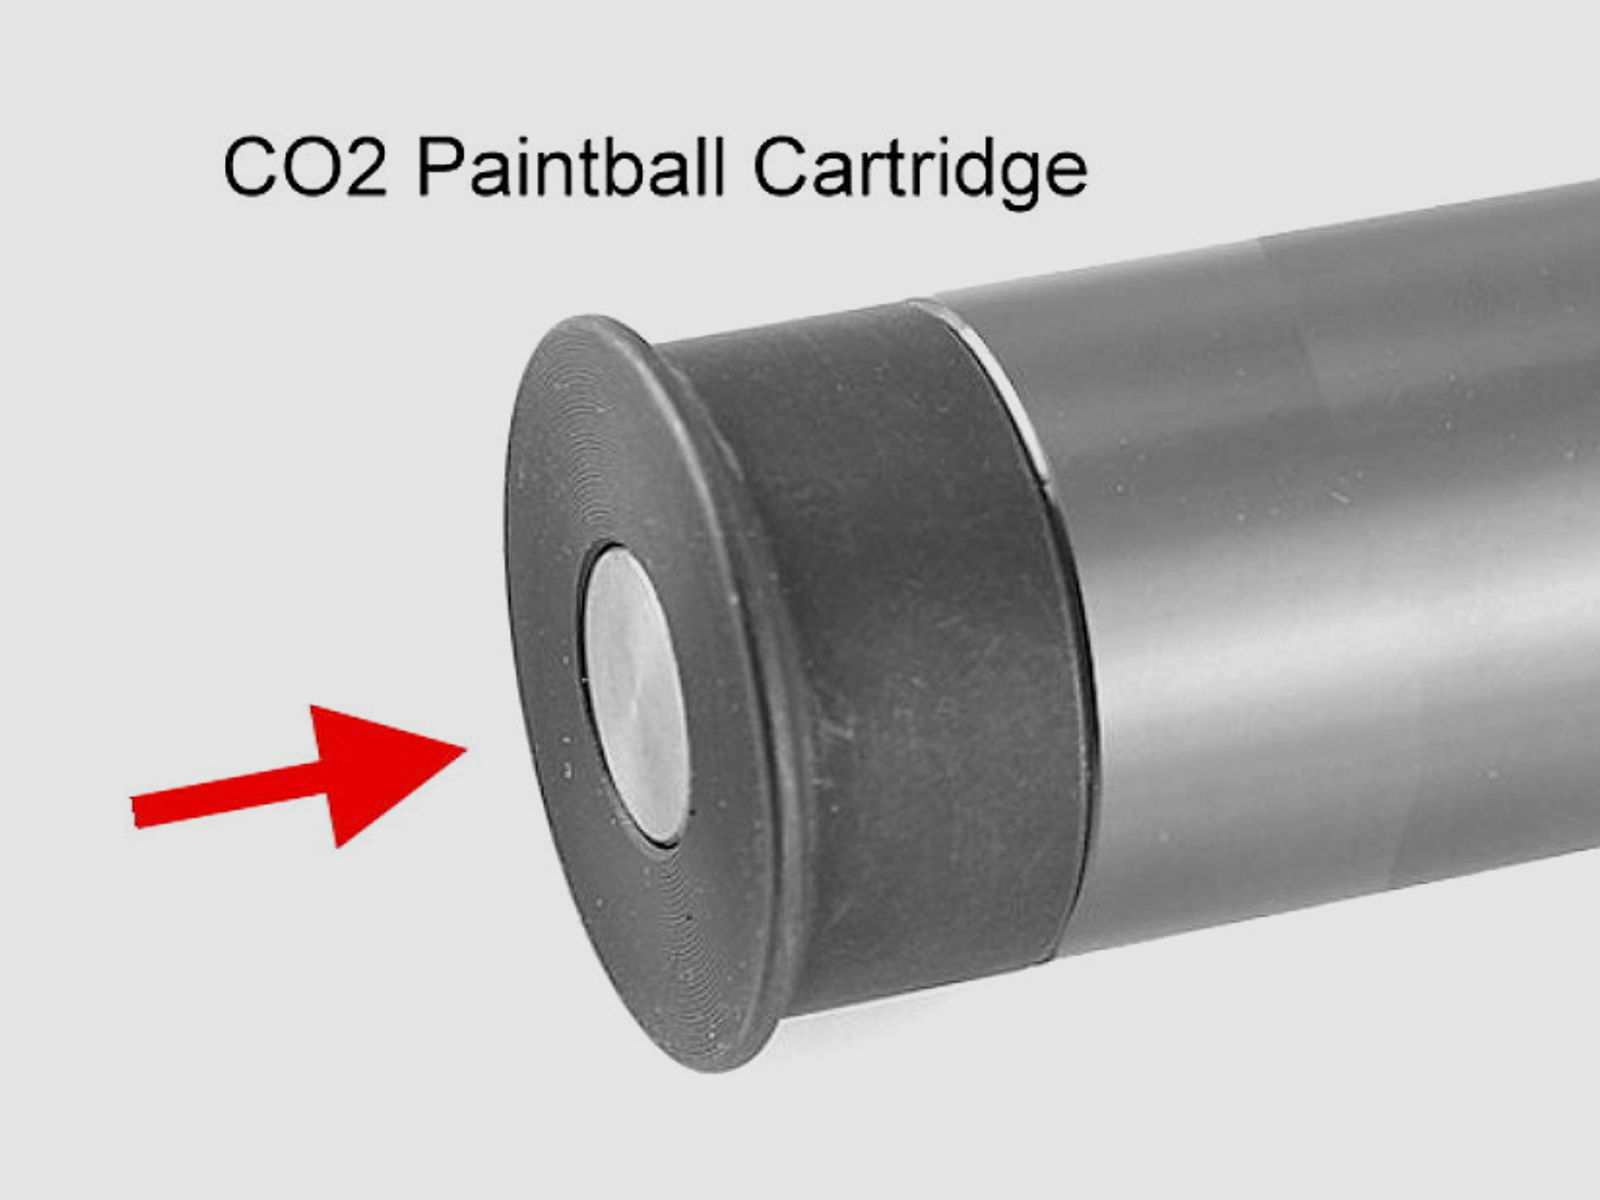 STEEL DEFENDER .68 CO2 Paintball & Heimverteidigung 7-RD RAM